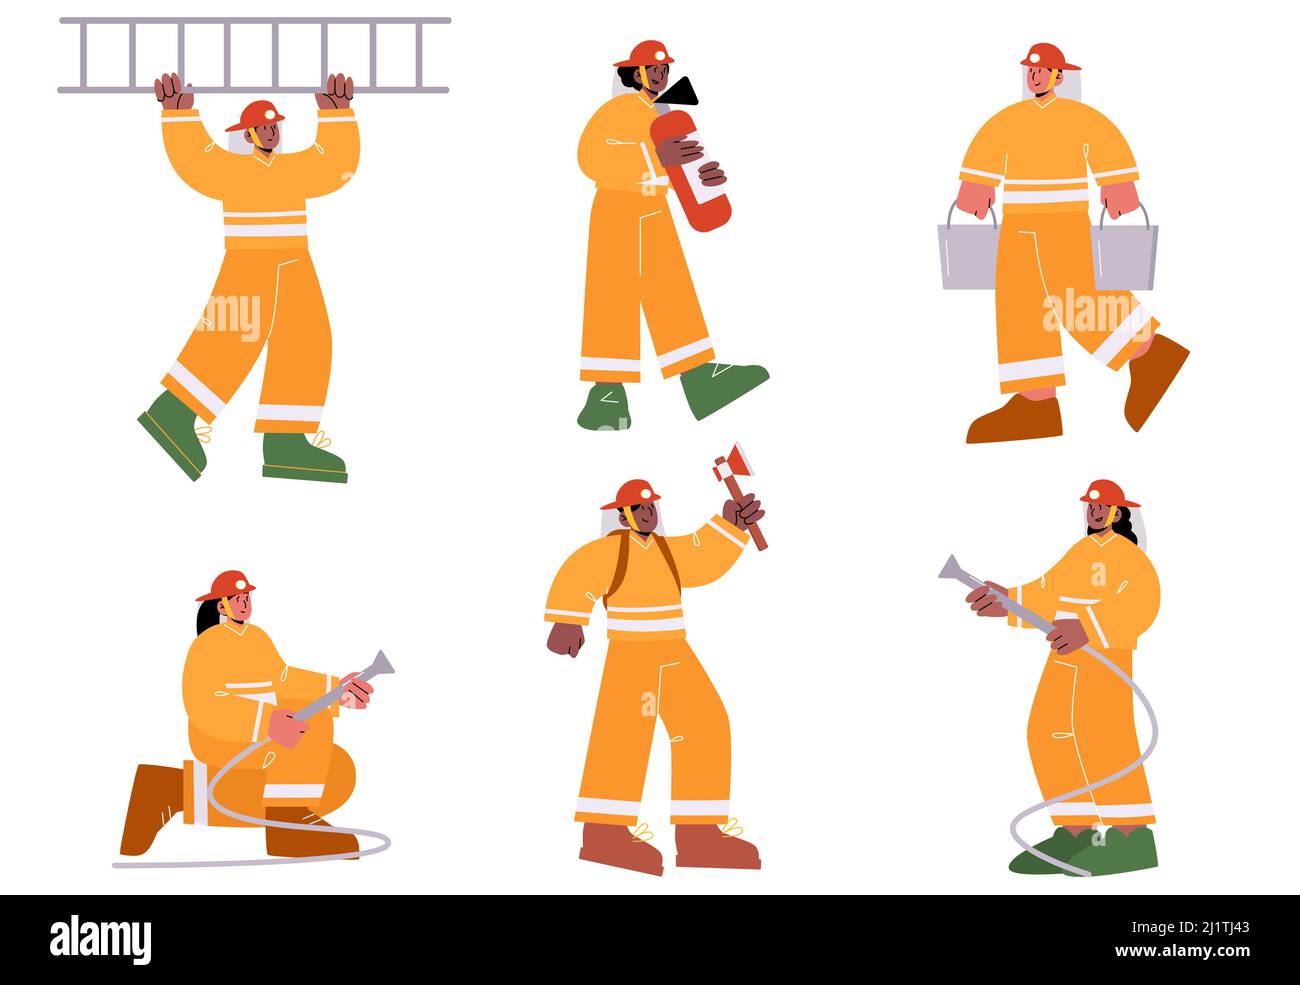 Pompiers avec extincteur, tuyau d'eau, échelle, hache et seaux. Illustration vectorielle à plat d'un groupe d'hommes et de femmes pompiers professionnels en casque et en costume de sécurité Illustration de Vecteur